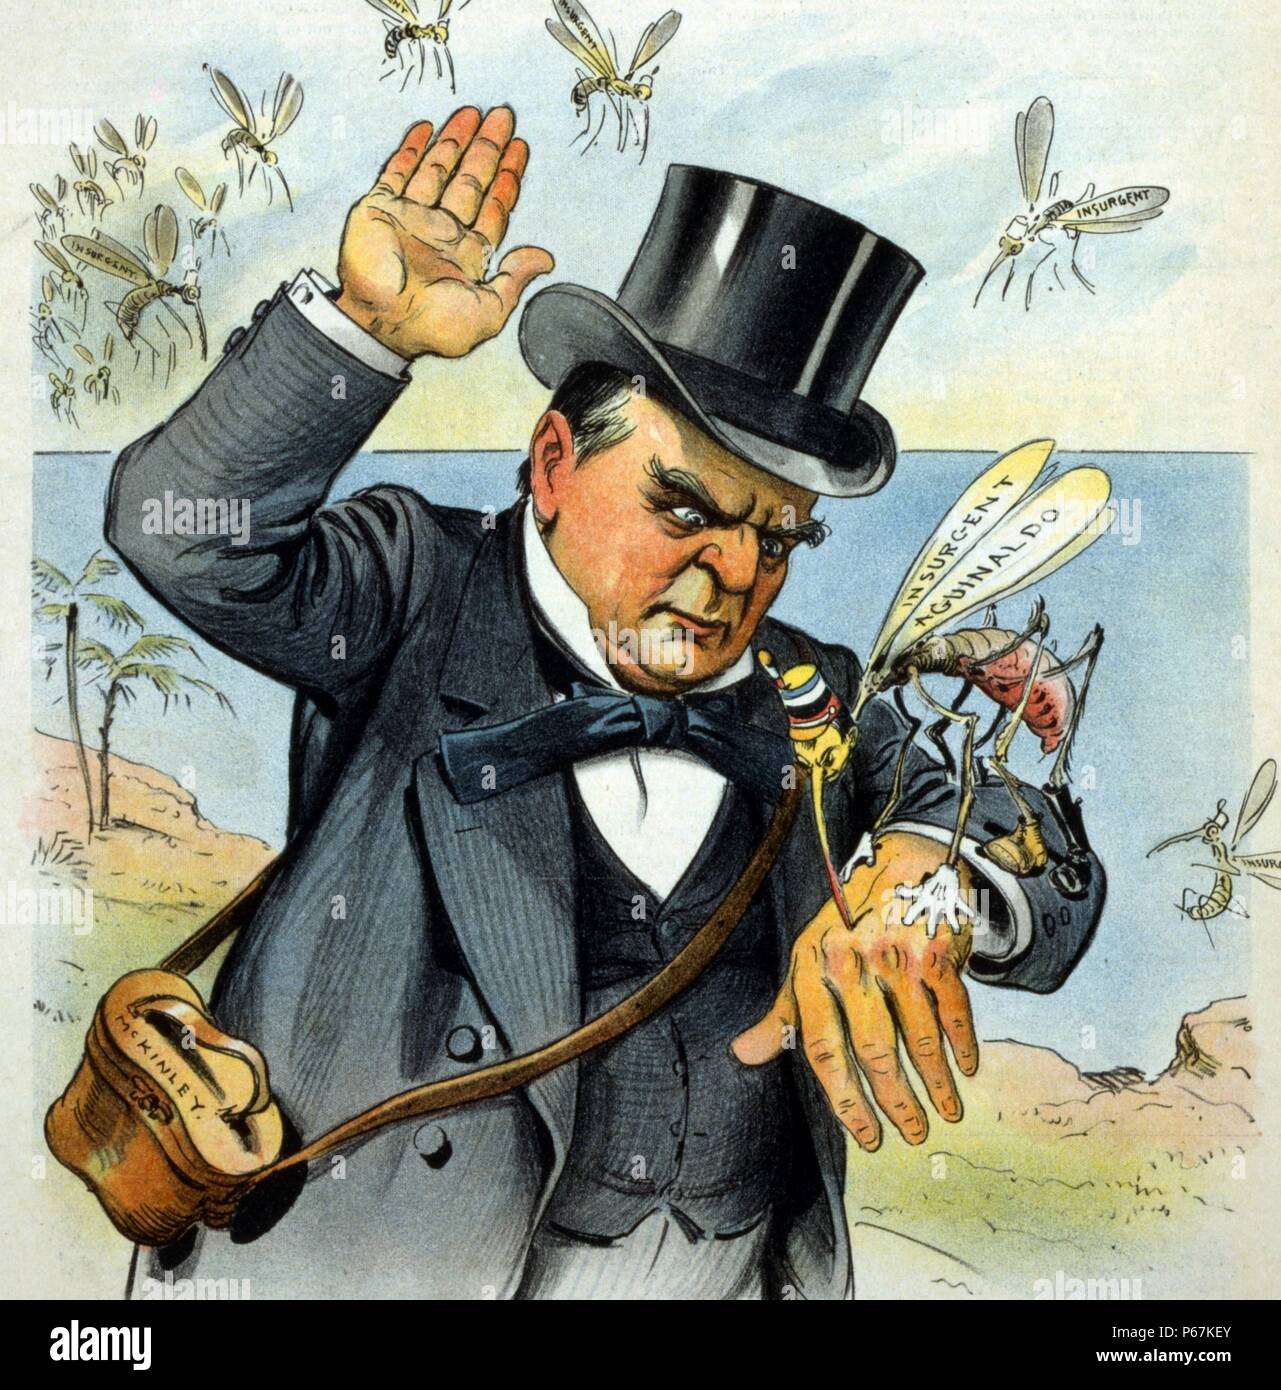 Ihn hart getroffen! Präsident McKinley - "osquitoes scheinen hier noch schlimmer in den Philippinen, als sie es in Kuba'' William McKinley Zu swat 'aufständischen Aguinaldo", eine Mücke, wie andere 'Aufständischen' Moskitos vorbereiten, ihn anzugreifen. Stockfoto